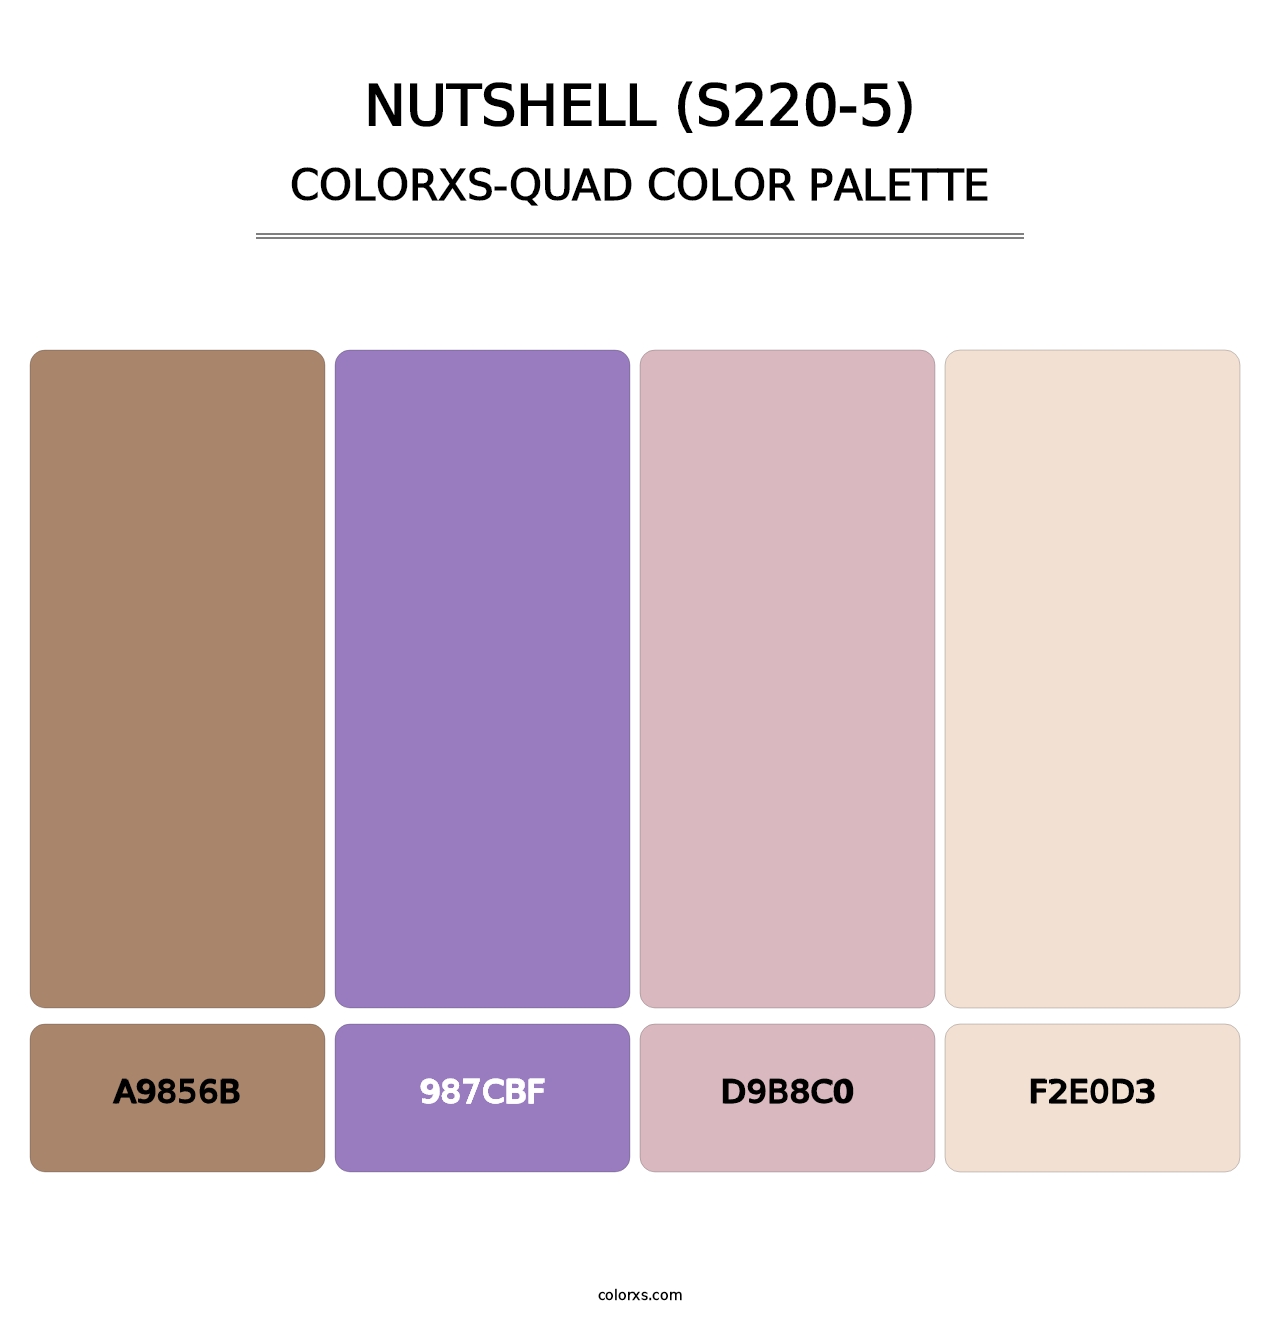 Nutshell (S220-5) - Colorxs Quad Palette